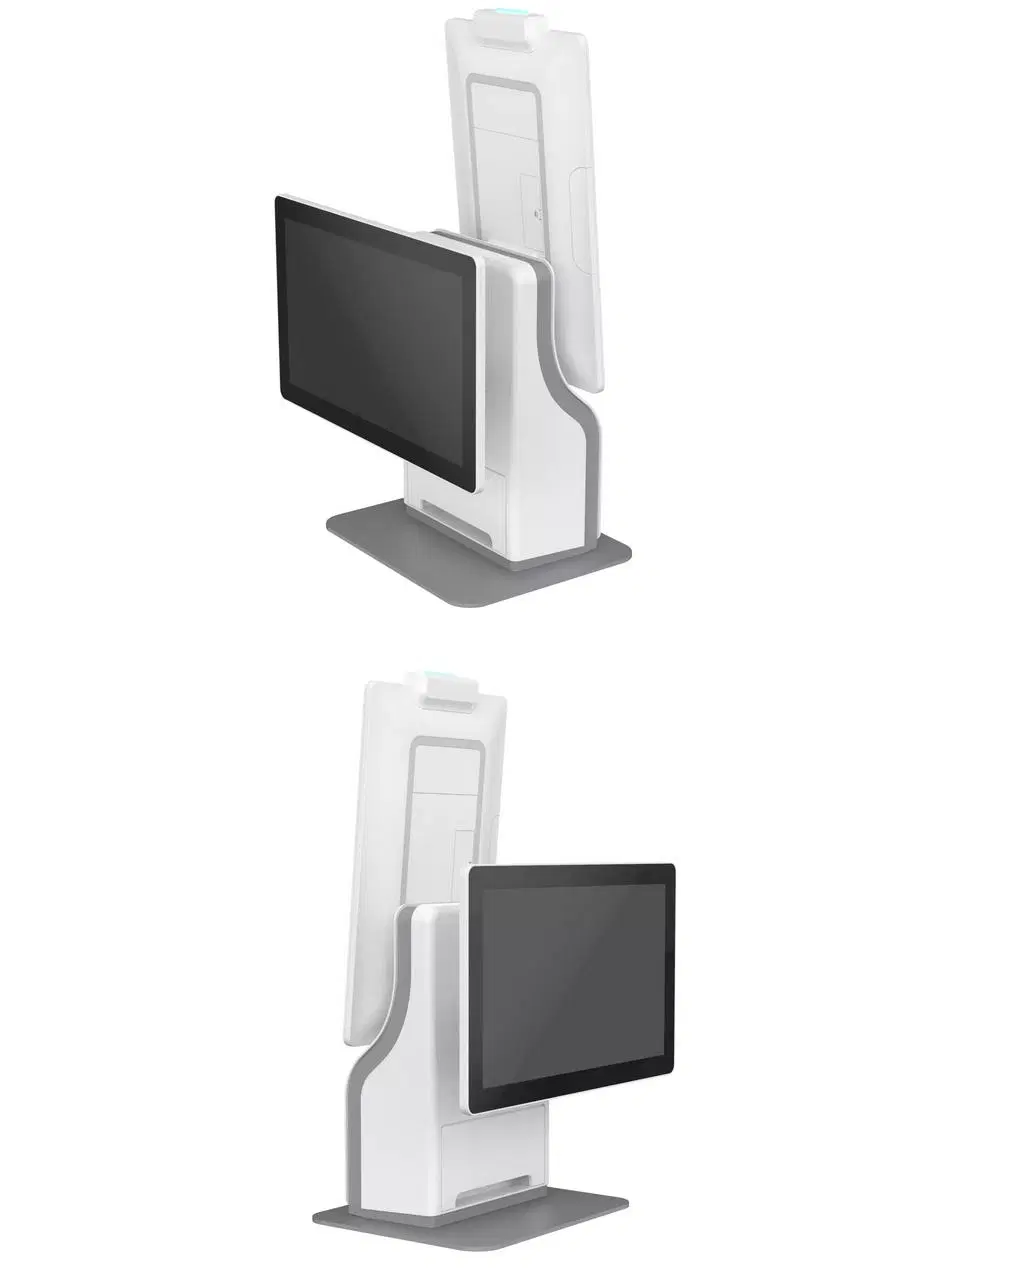 خدمة ذاتية على الوجهين لشاشة اللمس ذات الجهة المزدوجة مع وضع الوقوف بحجم 15.6 بوصة كشك LCD الطرفي للدفع الخاص بنقاط البيع